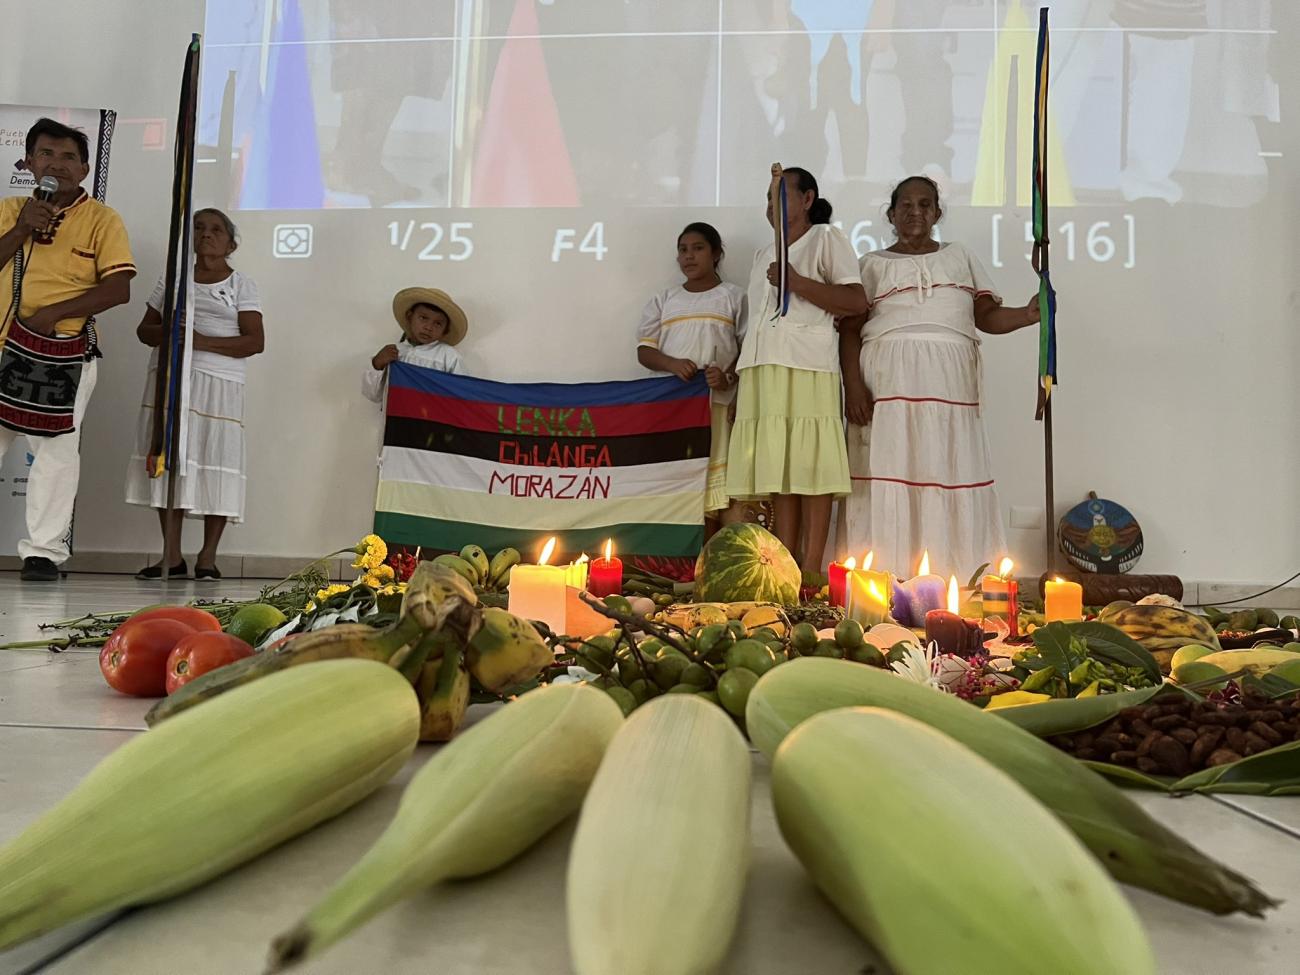 En primer plano, altar formado por los pueblos indígenas con mazorcas de maíz, flores, frutas y velas. Al fondo, mujeres  sosteniendo banderines y una joven y un niño con una bandera que dice Kakawira, Morazán.